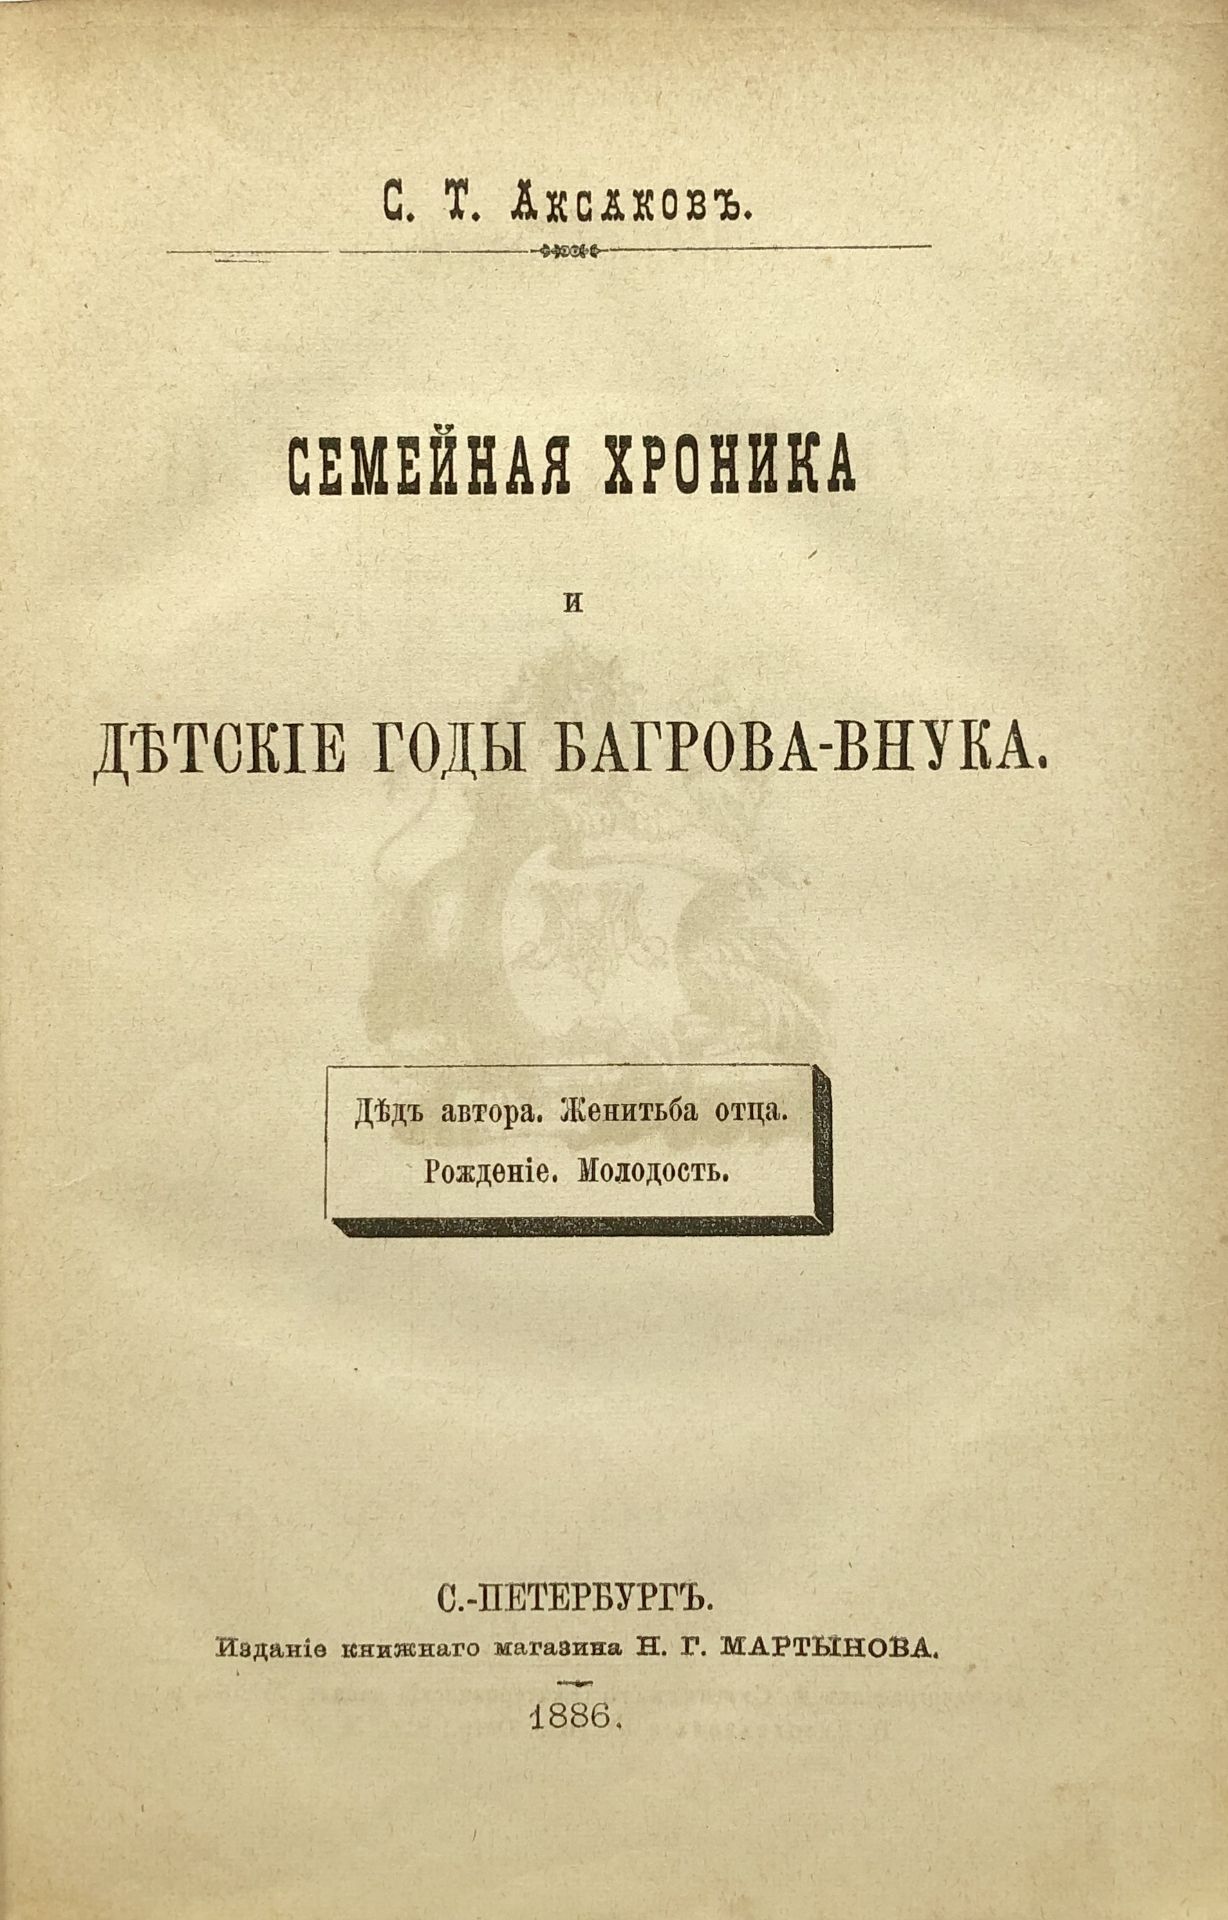 AKSAKOV, Serge. Œuvres en 6 vol. St.-Pétersbourg: N. Martynov, 1886. 4 vol. in-8°, [...]